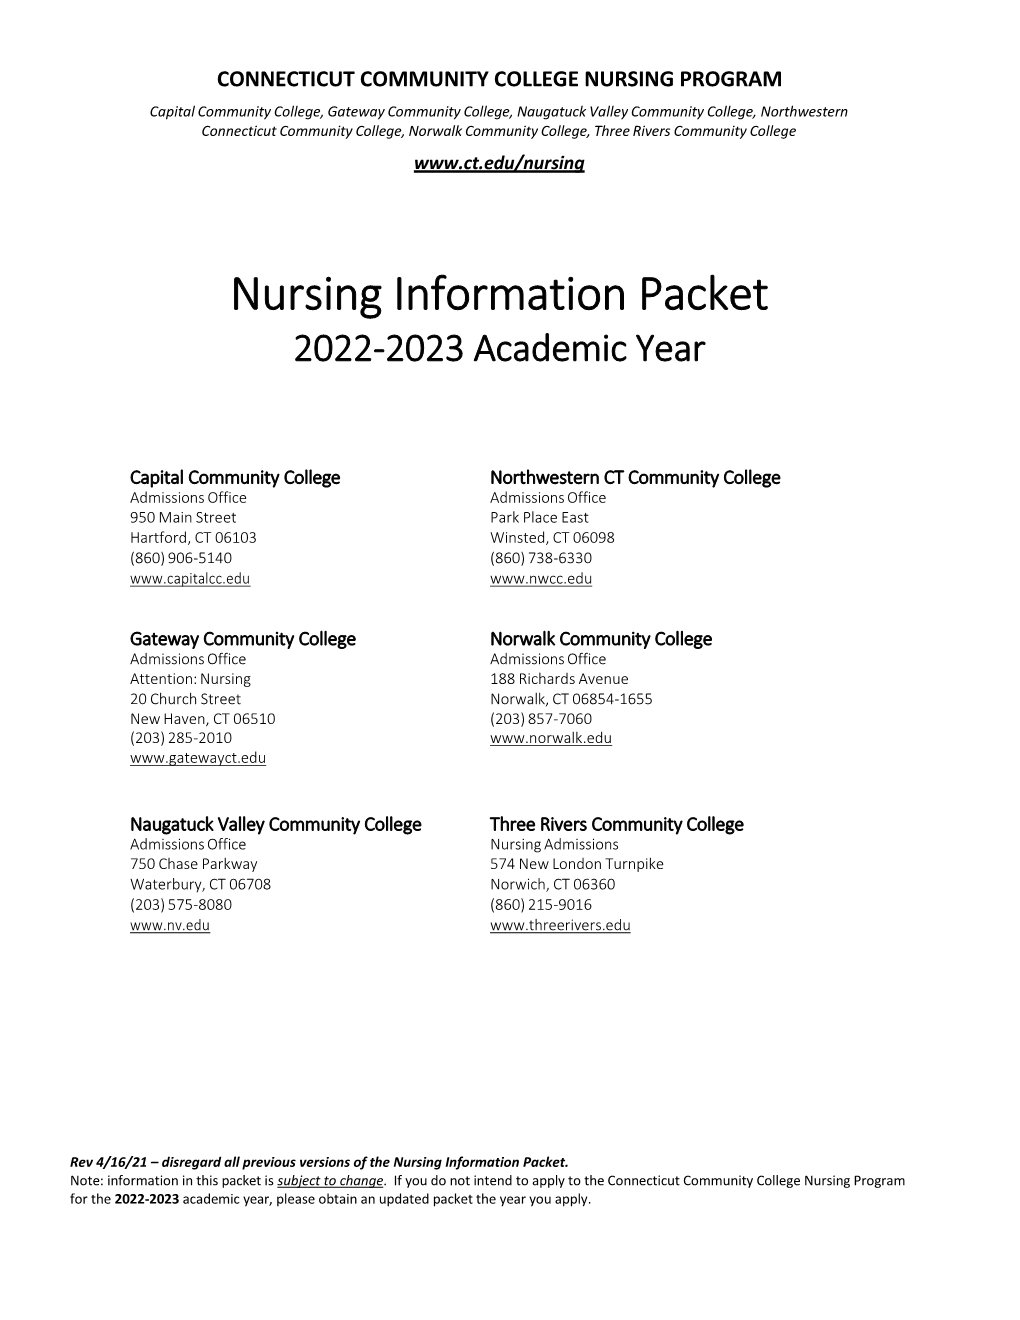 Nursing Information Packet 2022-2023 Academic Year